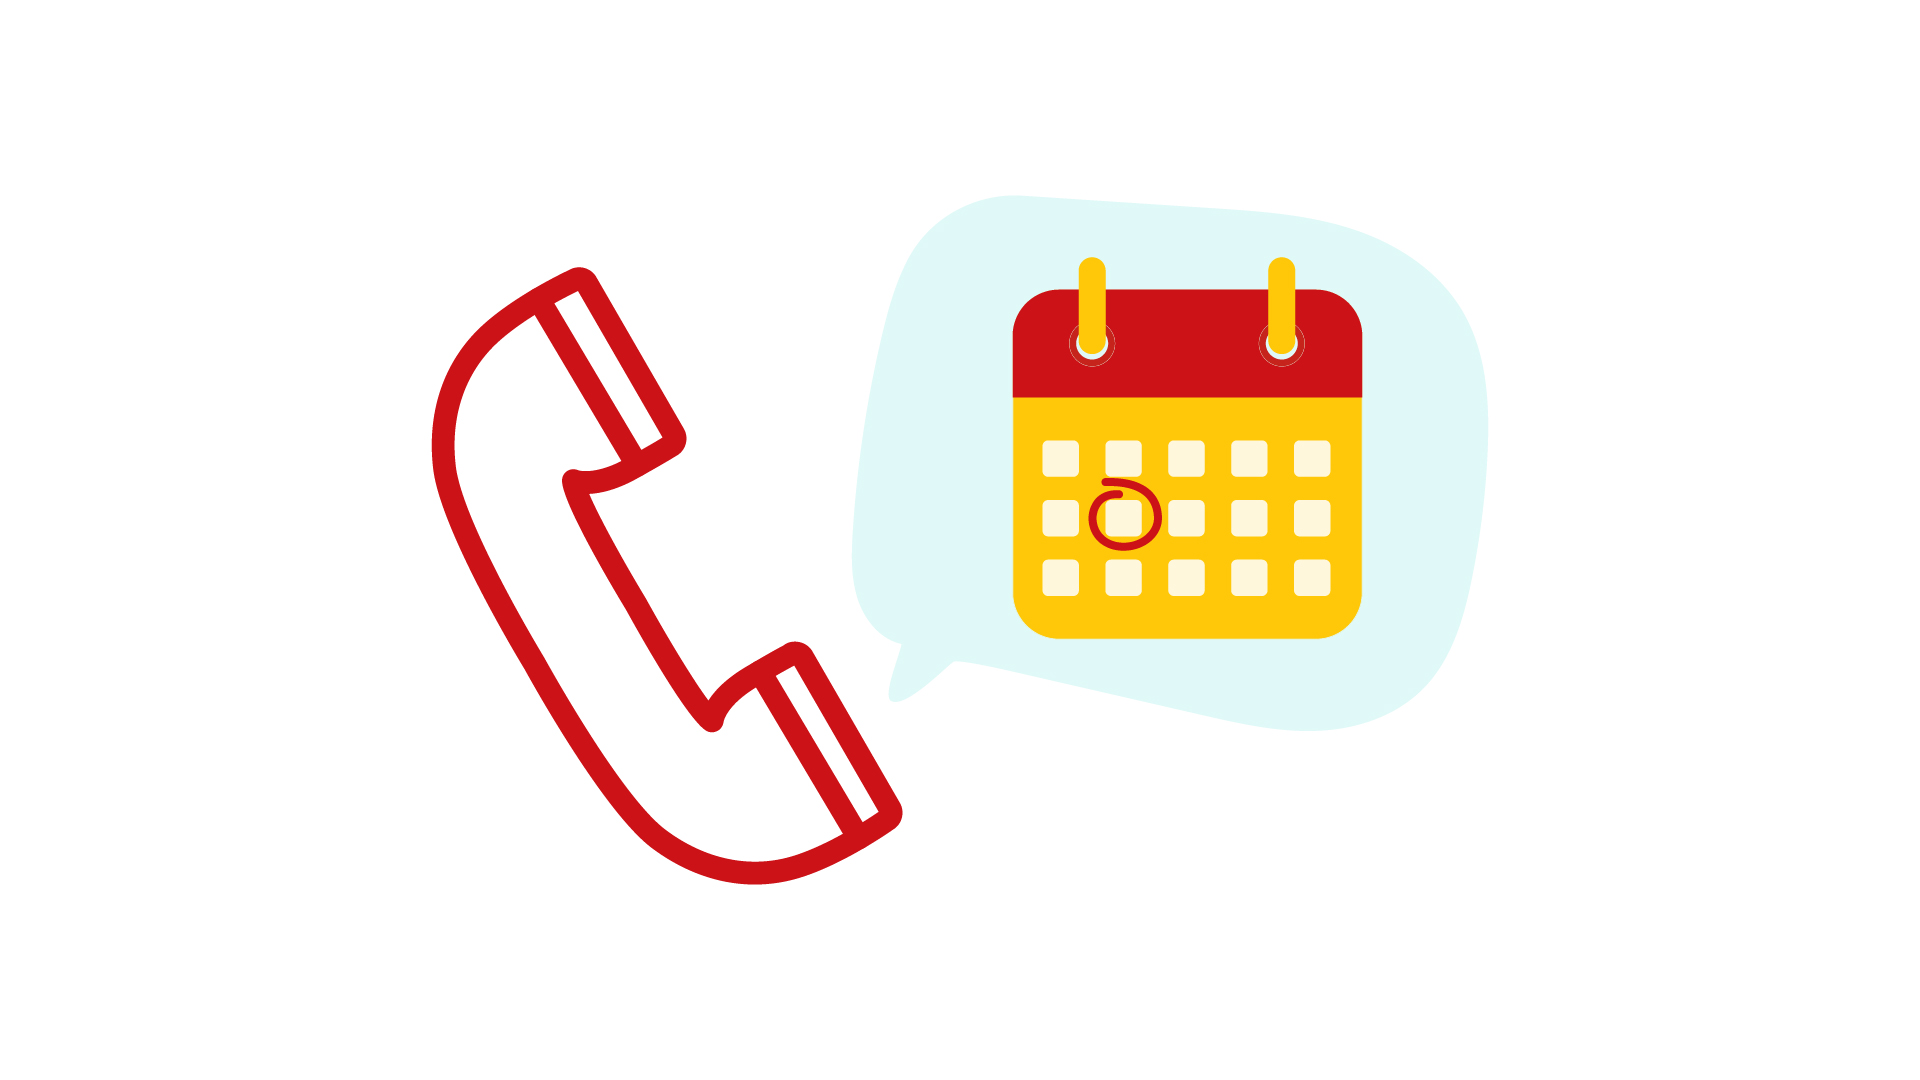 Neben einem roten Telefonhörer ist eine Sprechblase mit einem Kalender abgebildet, in dem ein Tag makiert ist, an dem ein Kunde besonders gut für einen Verkauf erreicht werden kann.